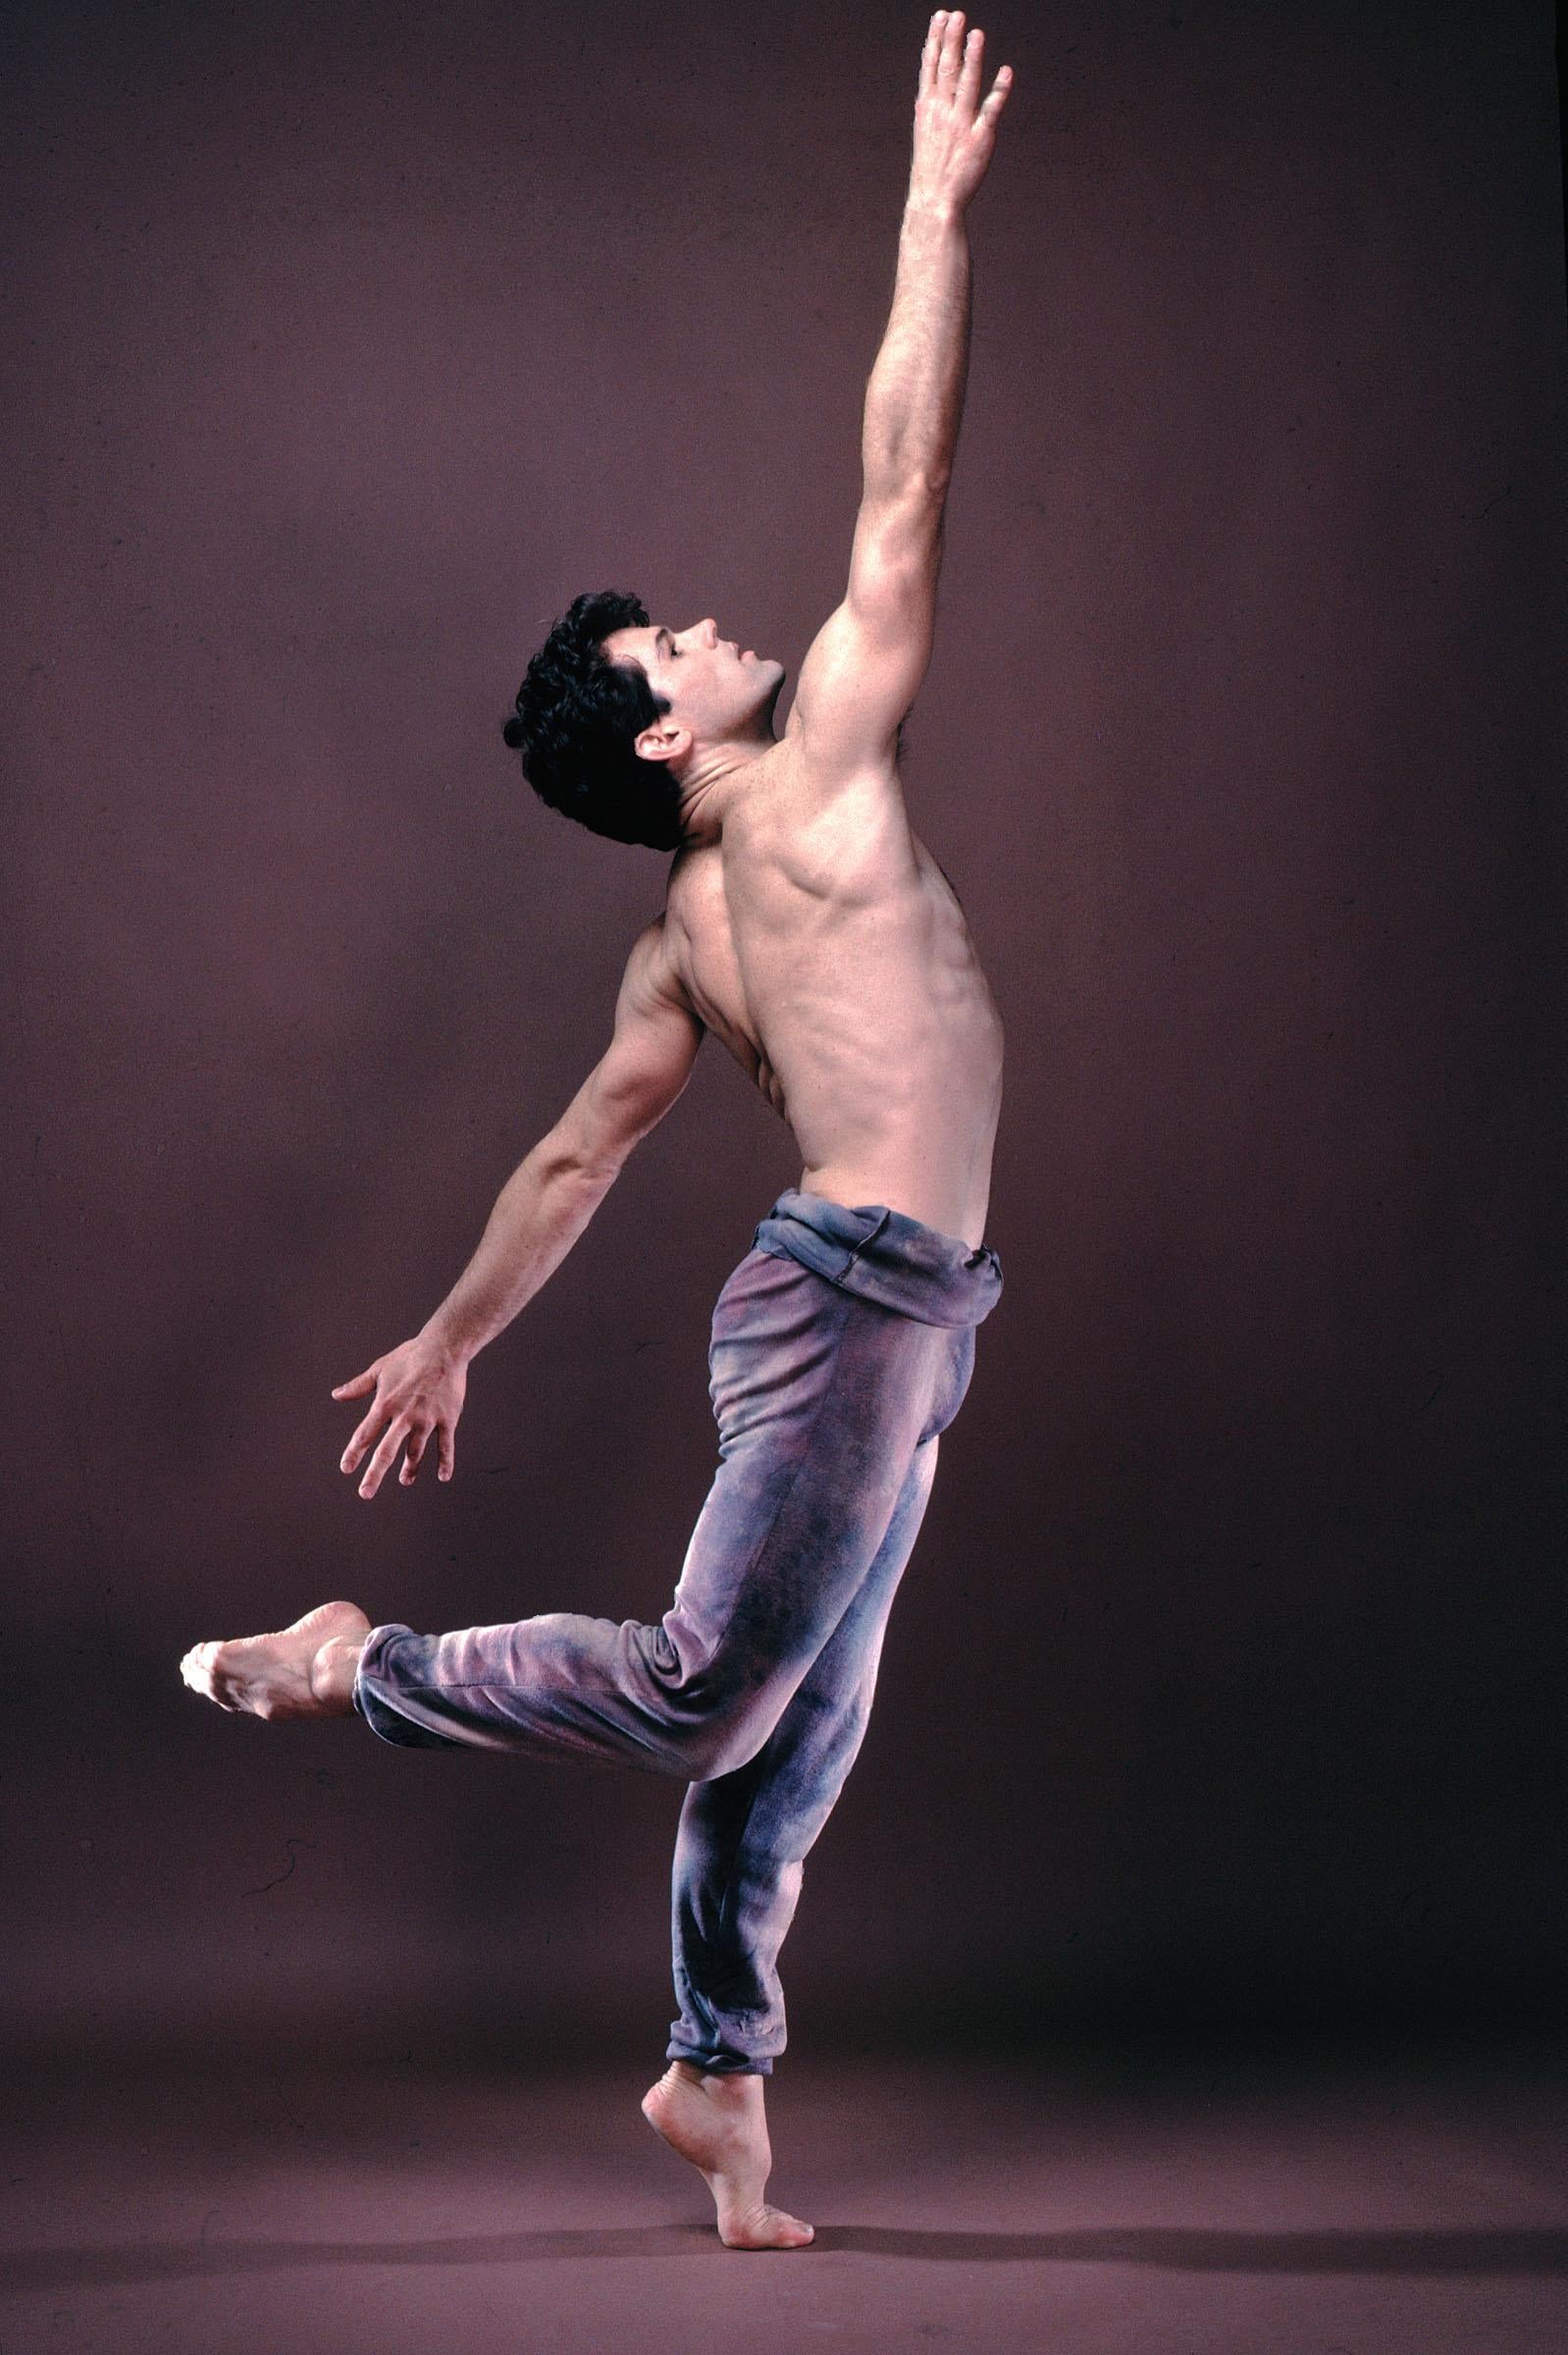 Dancer/Choreographer Christopher Gillis, Colour 17 x 22" Exhibition Photograph 